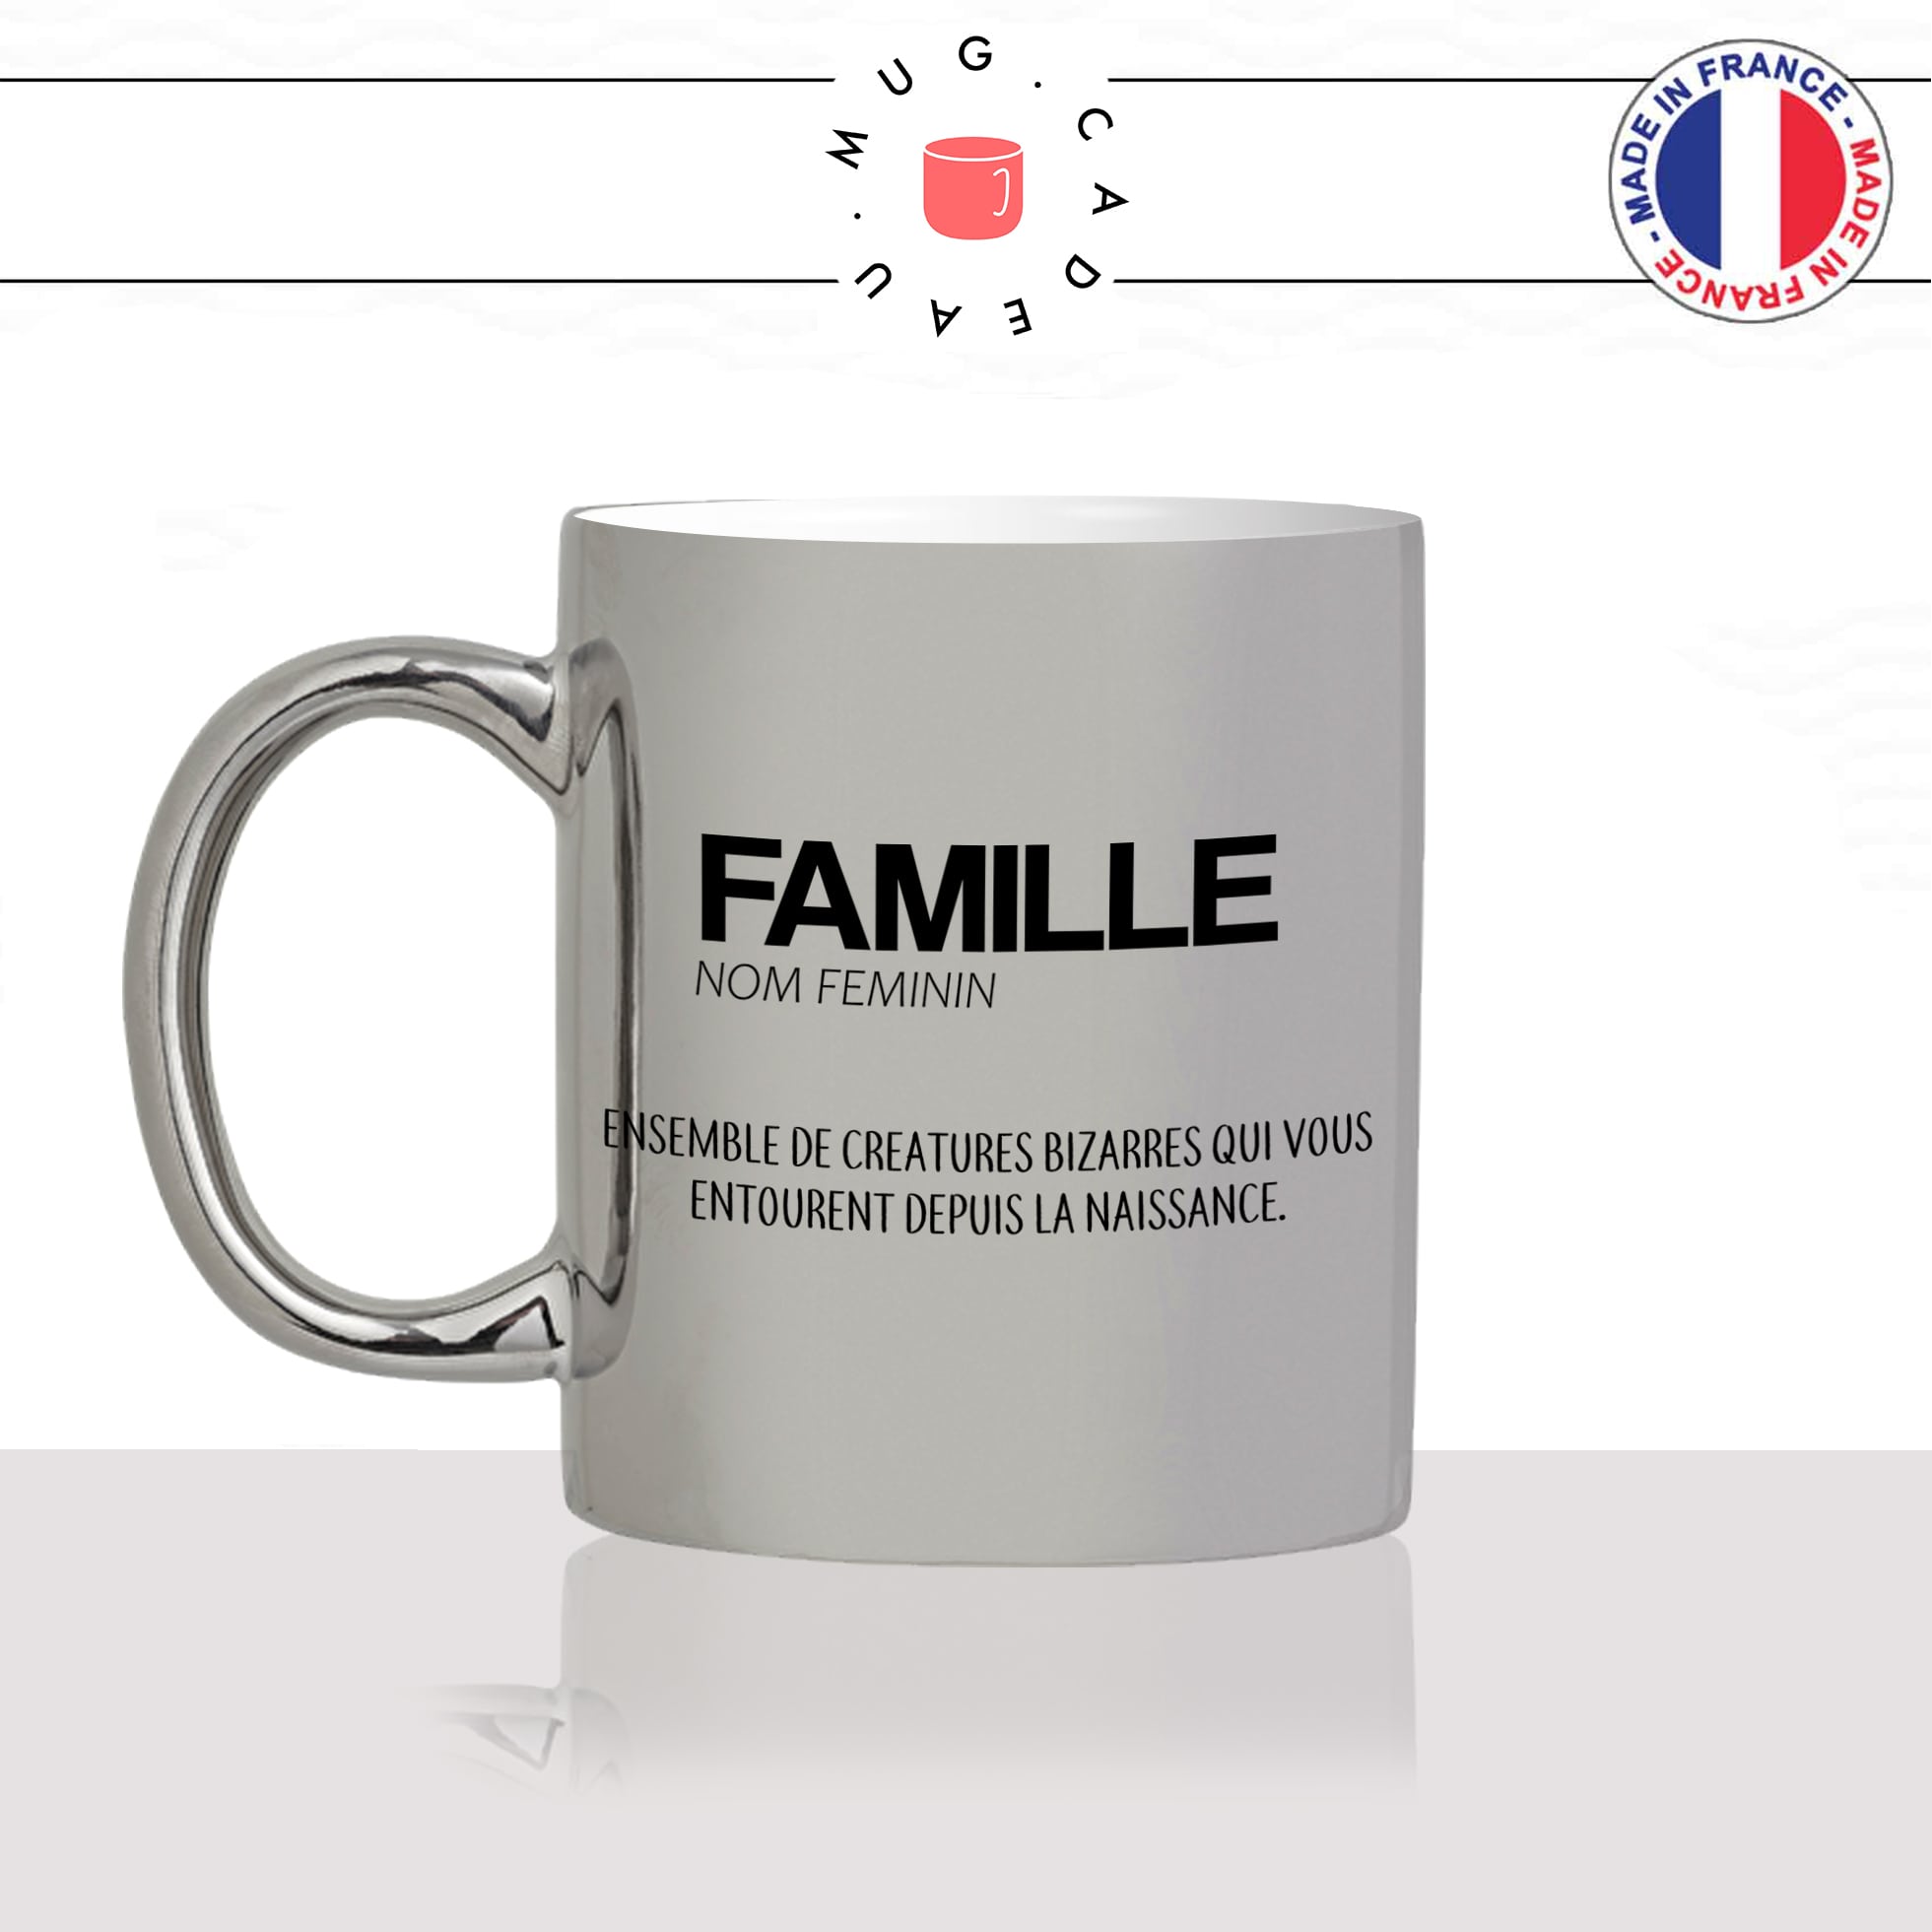 mug-tasse-argent-argenté-silver-famille-definition-enfant-parents-frere-soeur-maison-decoration-humour-idée-cadeau-fun-cool-café-thé-original-min